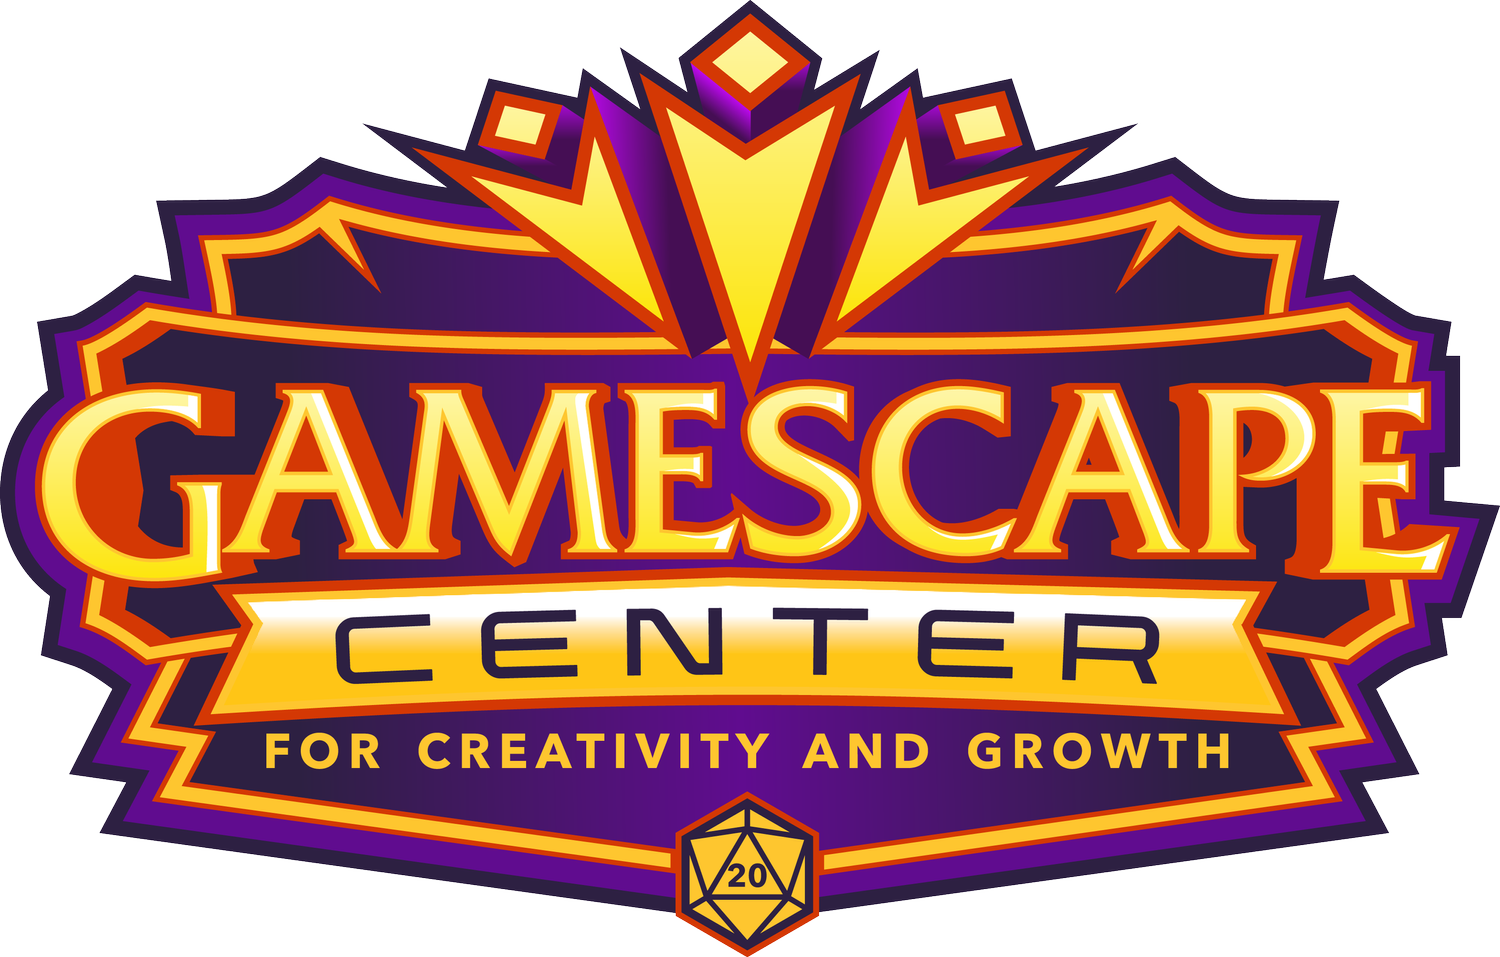 Gamescape Center